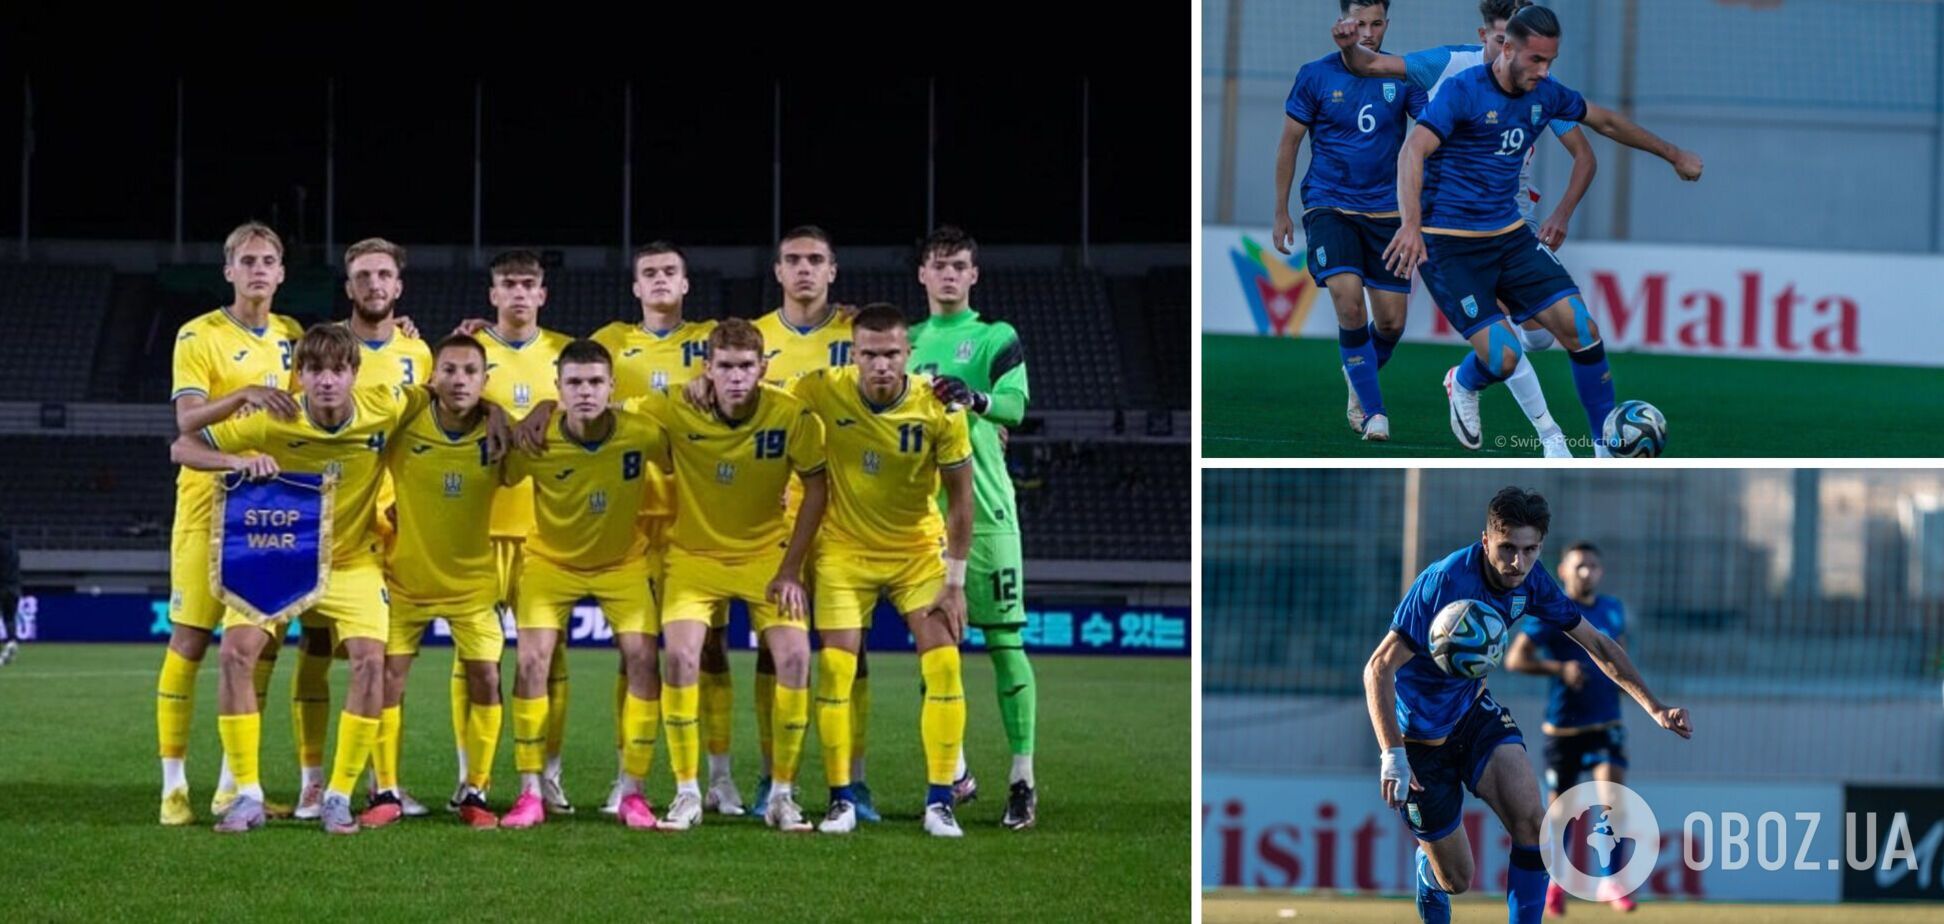 Сборная Украины по футболу сенсационно проиграла со счетом 0:4 в отборе на чемпионат Европы U-19